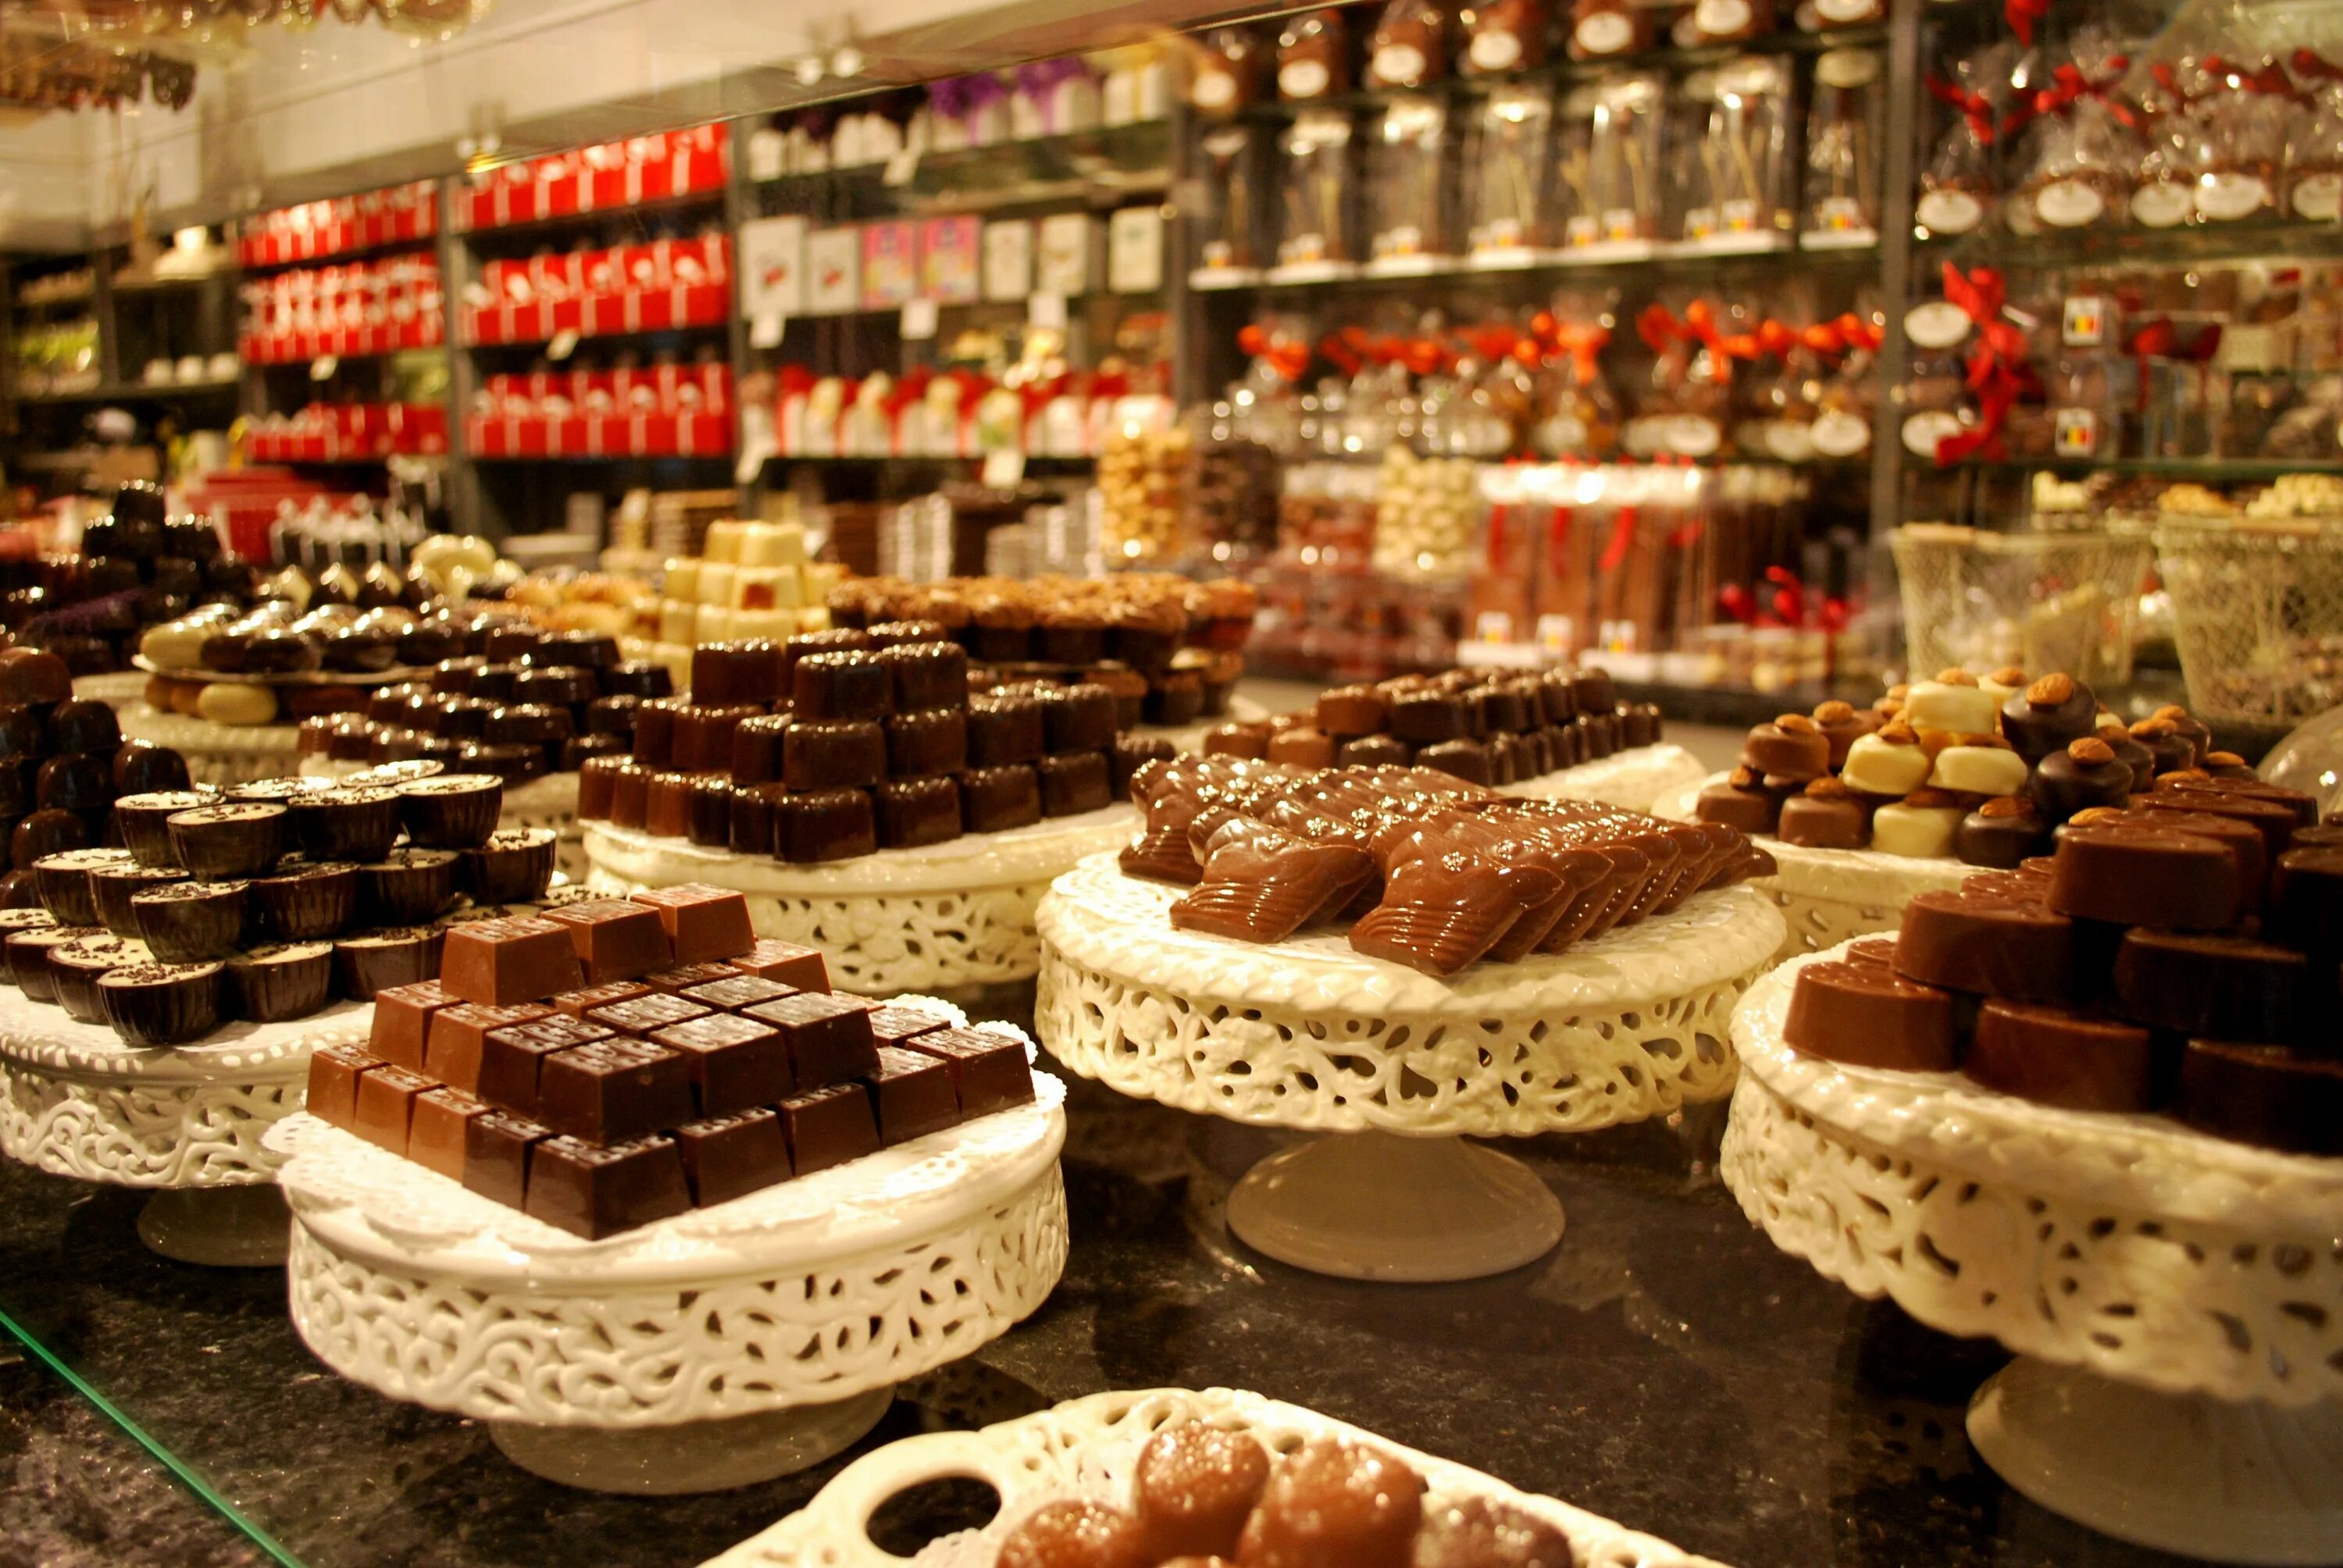 Бельгийский шоколад в Бельгии. Саратов музей шоколада Шоколандия. Patisserie шоколад бельгийский. Сладости в кондитерской. Производит сладости